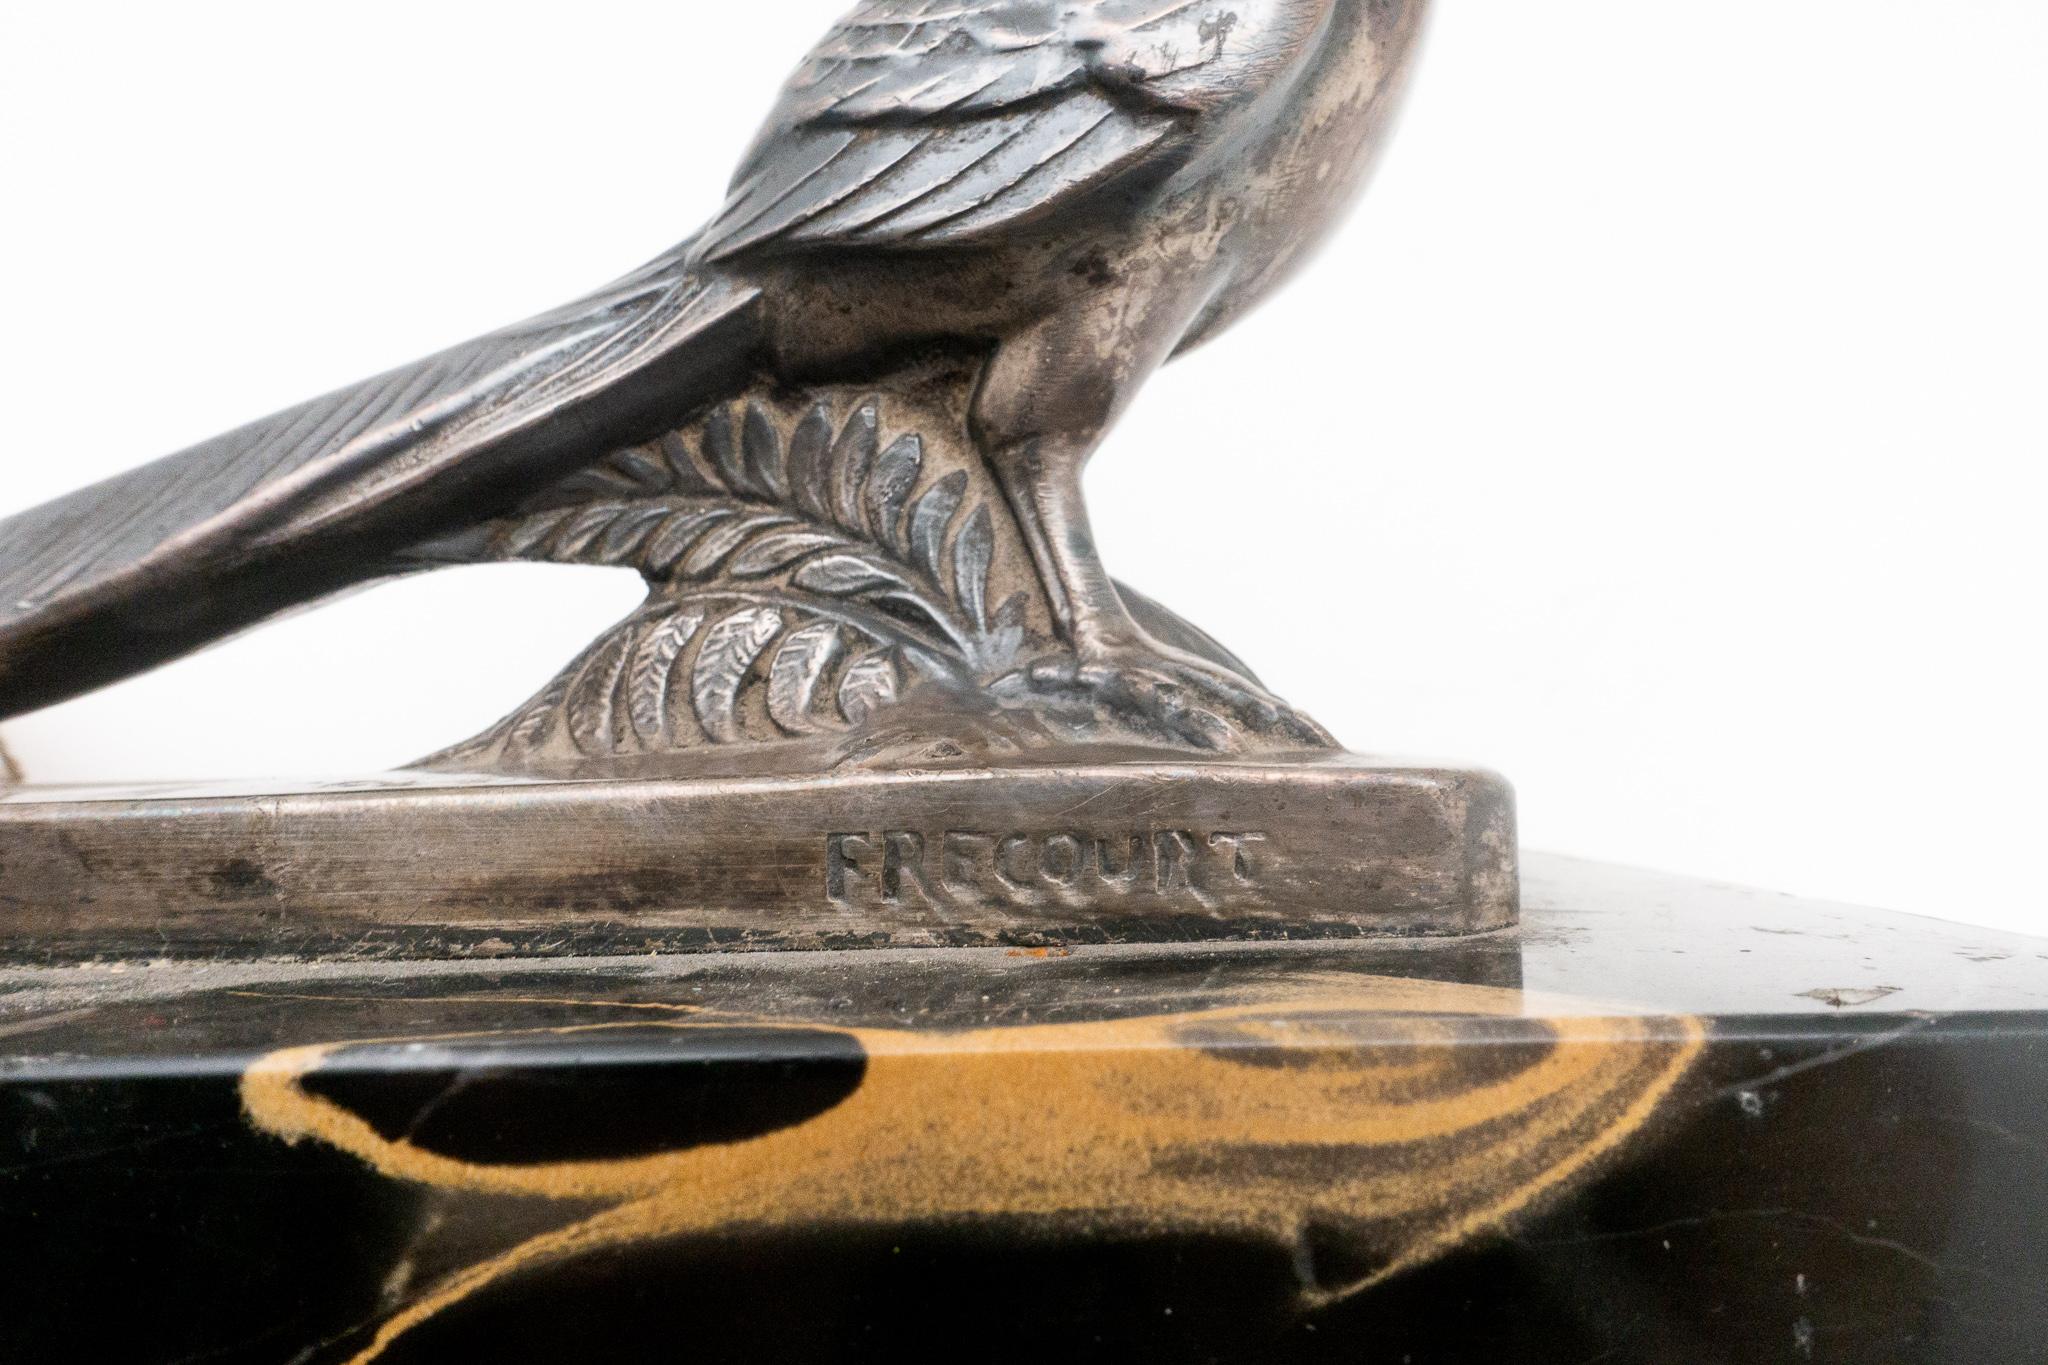 Frécourt Silvered Bronze Pheasant 1